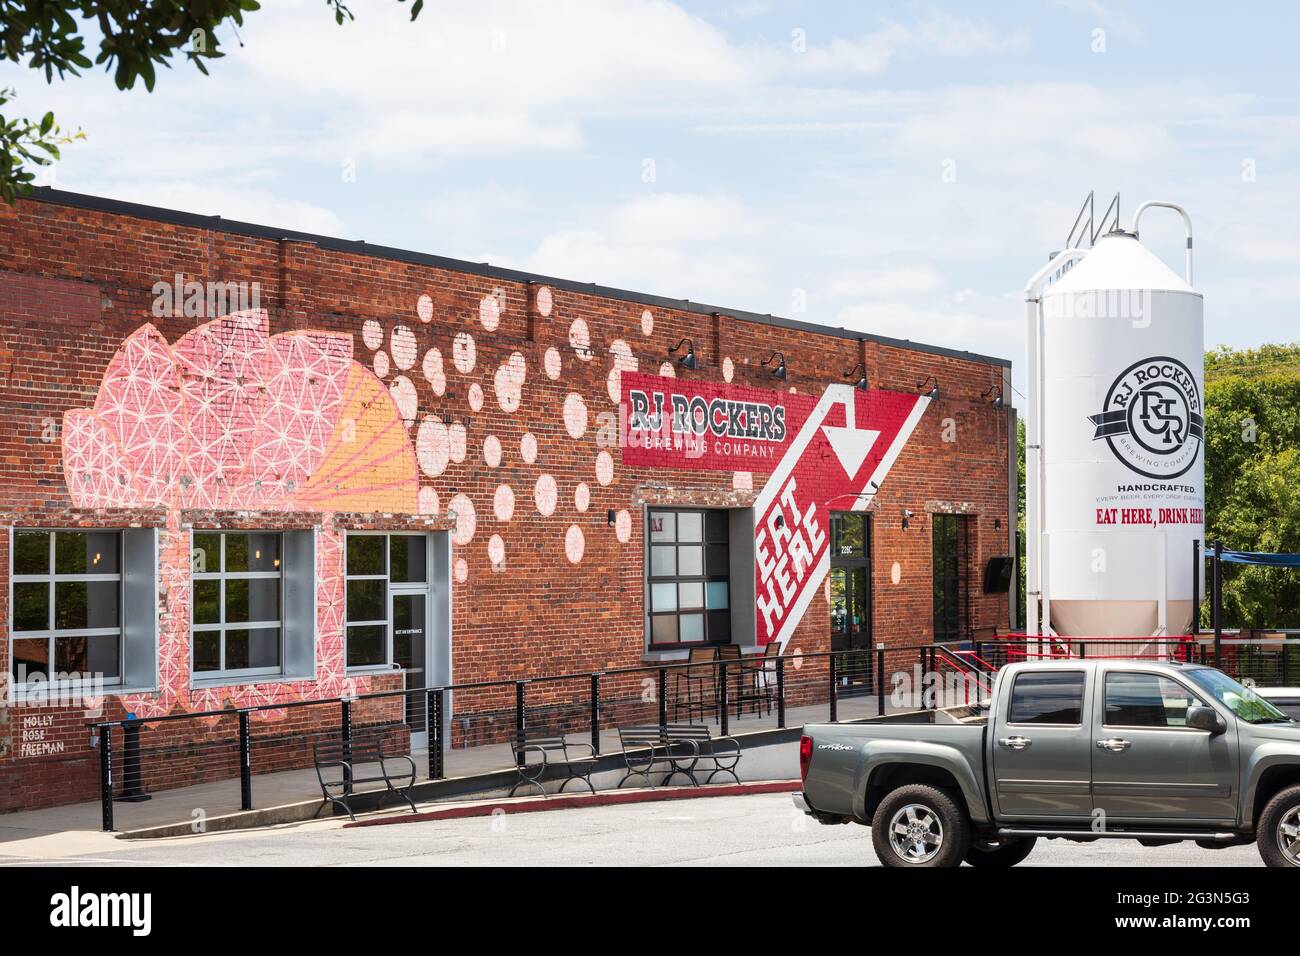 SPARTANBURG, SC, USA-13 JUNIO 2021: Imagen de la compañía de cerveza RJ Rockers, mostrando el edificio, estacionamiento, tanque de cerveza blanco, letreros y logo. Horizontal Foto de stock